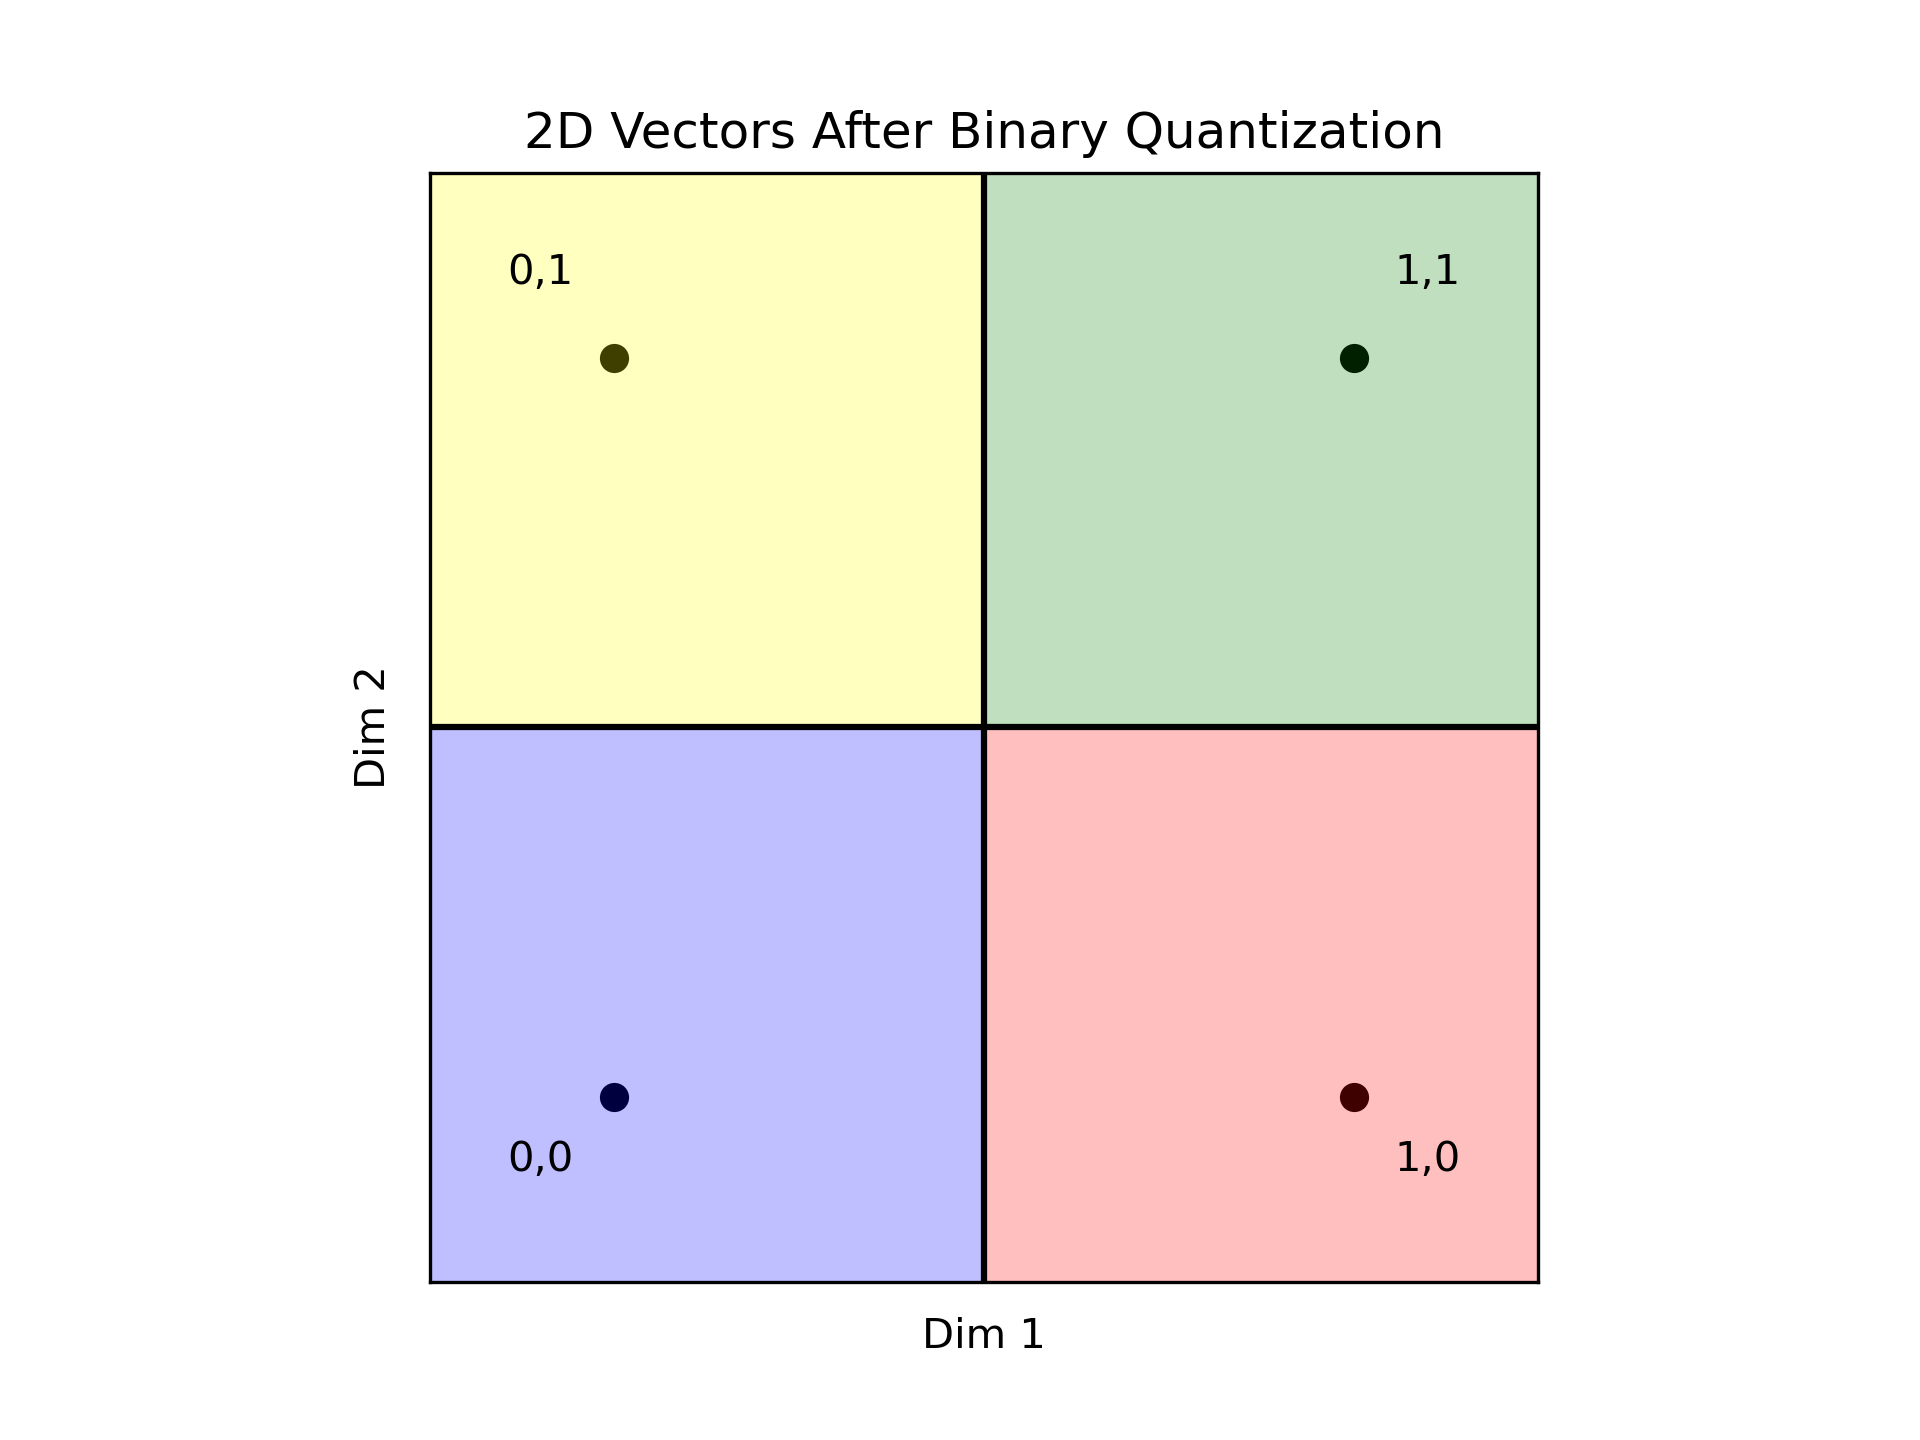 BinaryVectors